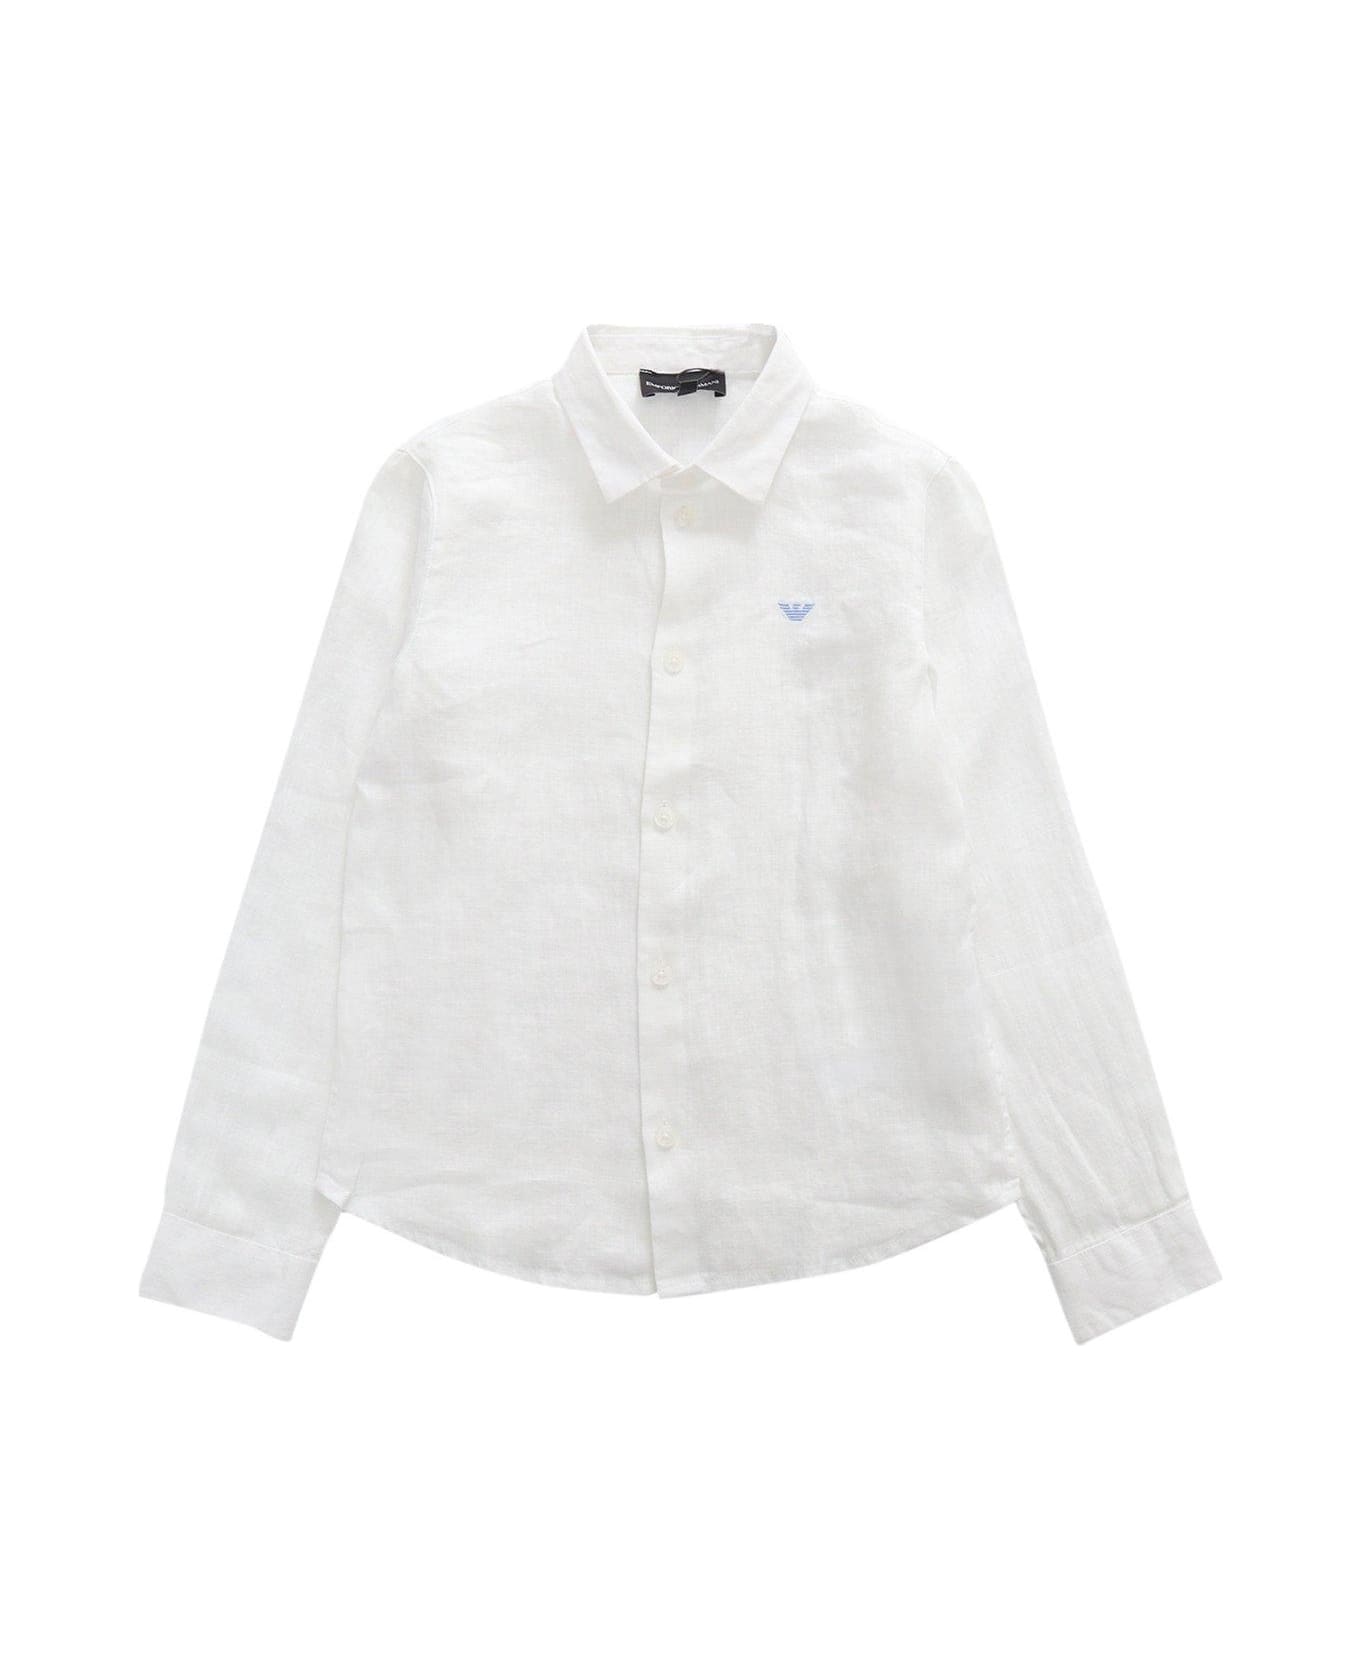 Emporio Armani Logo Embroidered Buttoned Shirt - Bianco ottico